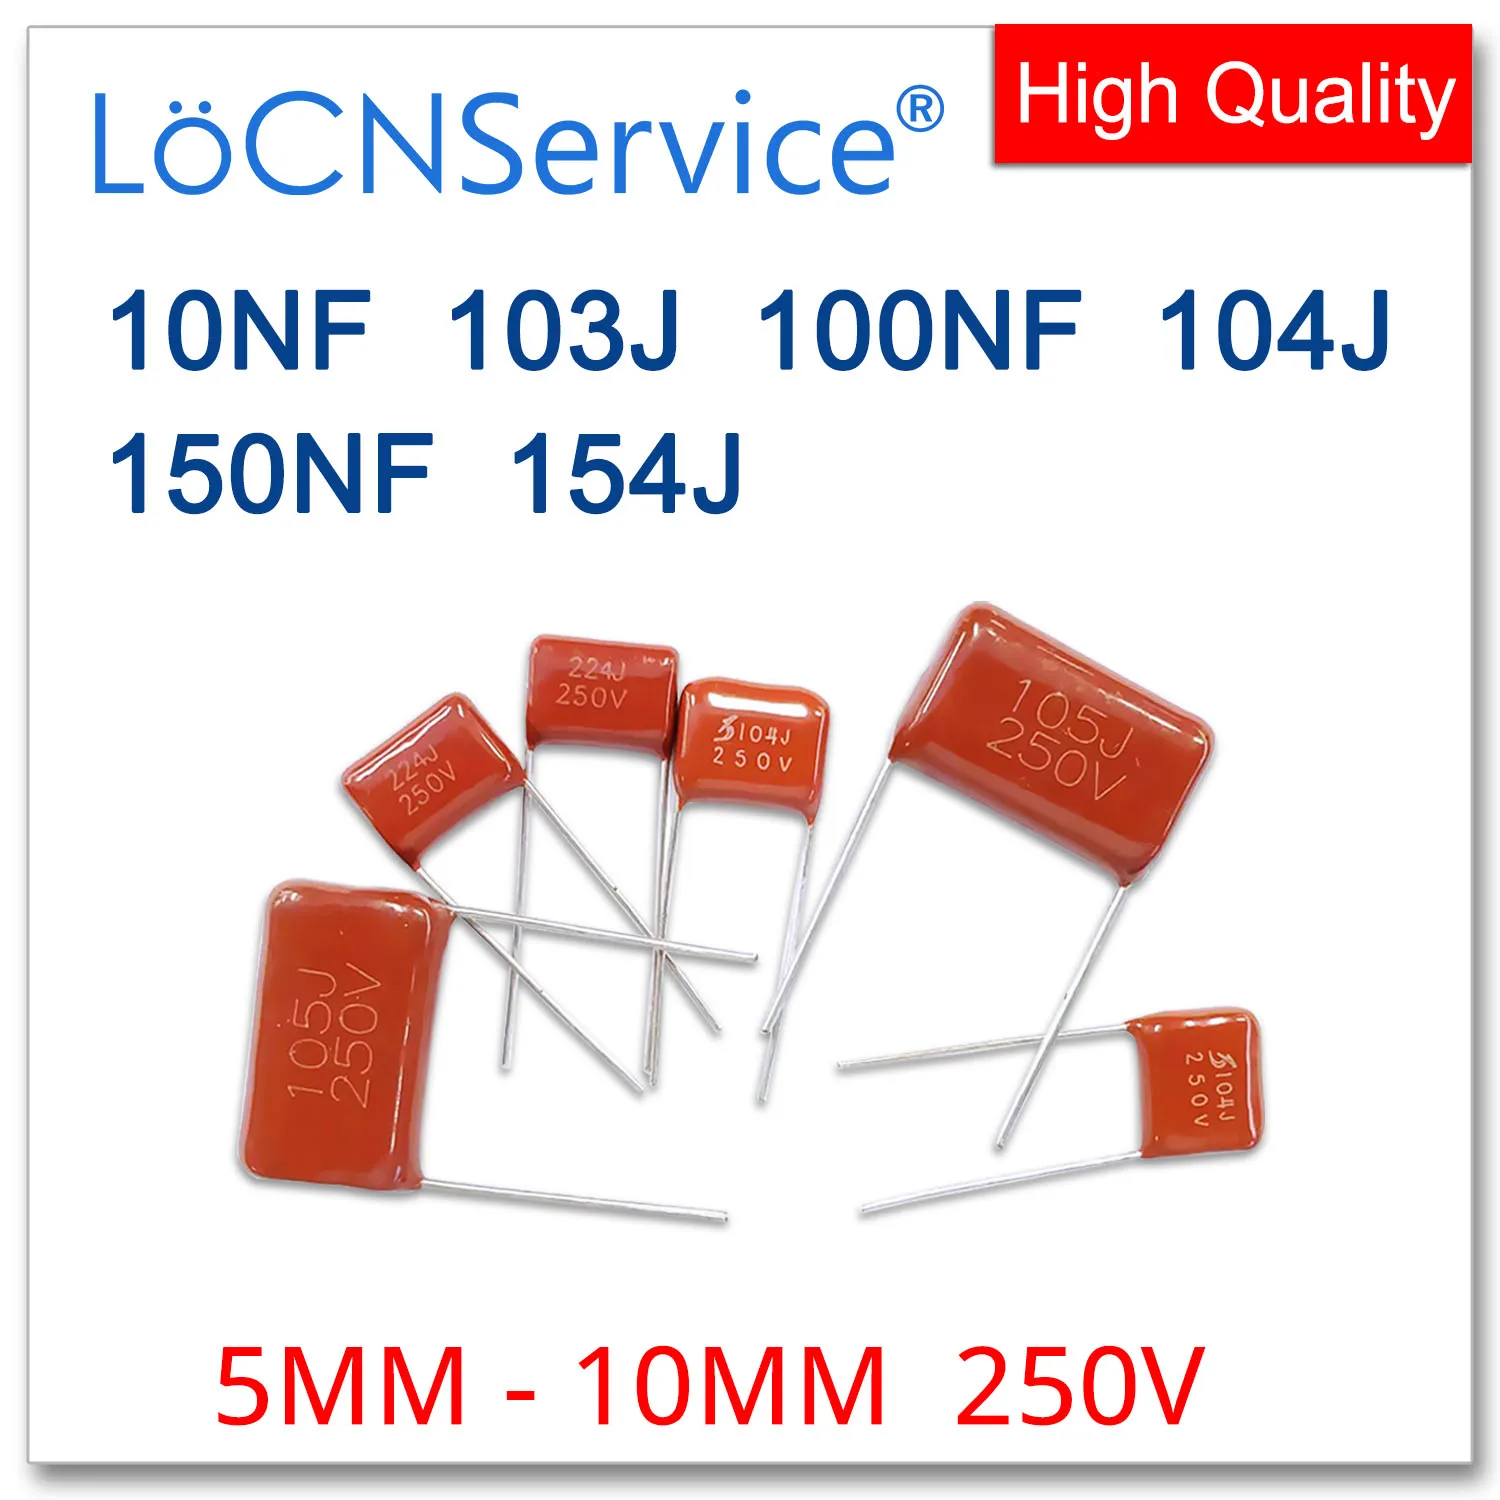 LoCNService-Condensador de película de polipropileno, 1000 piezas, 5MM, 7,5 MM, 10MM, 250V, 10NF, 100NF, 150NF, 103J, 104J, 154J, CBB, 103K, 104K